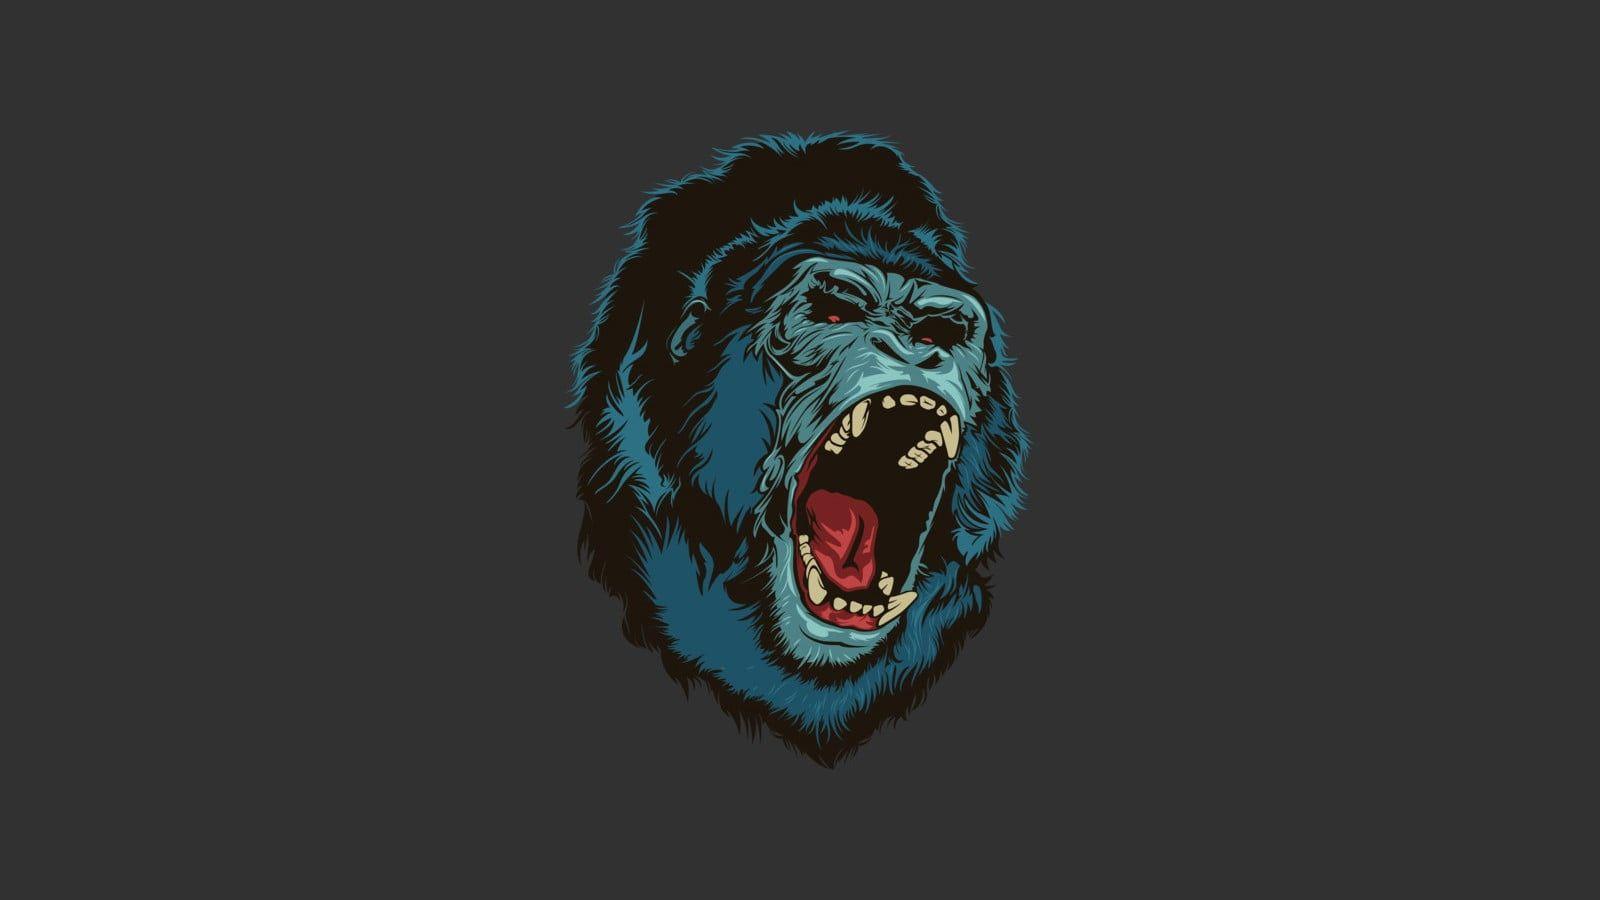 Hình nền kỹ thuật số 1600x900 Black gorilla, tiếng gầm, con khỉ, vượn, đơn giản